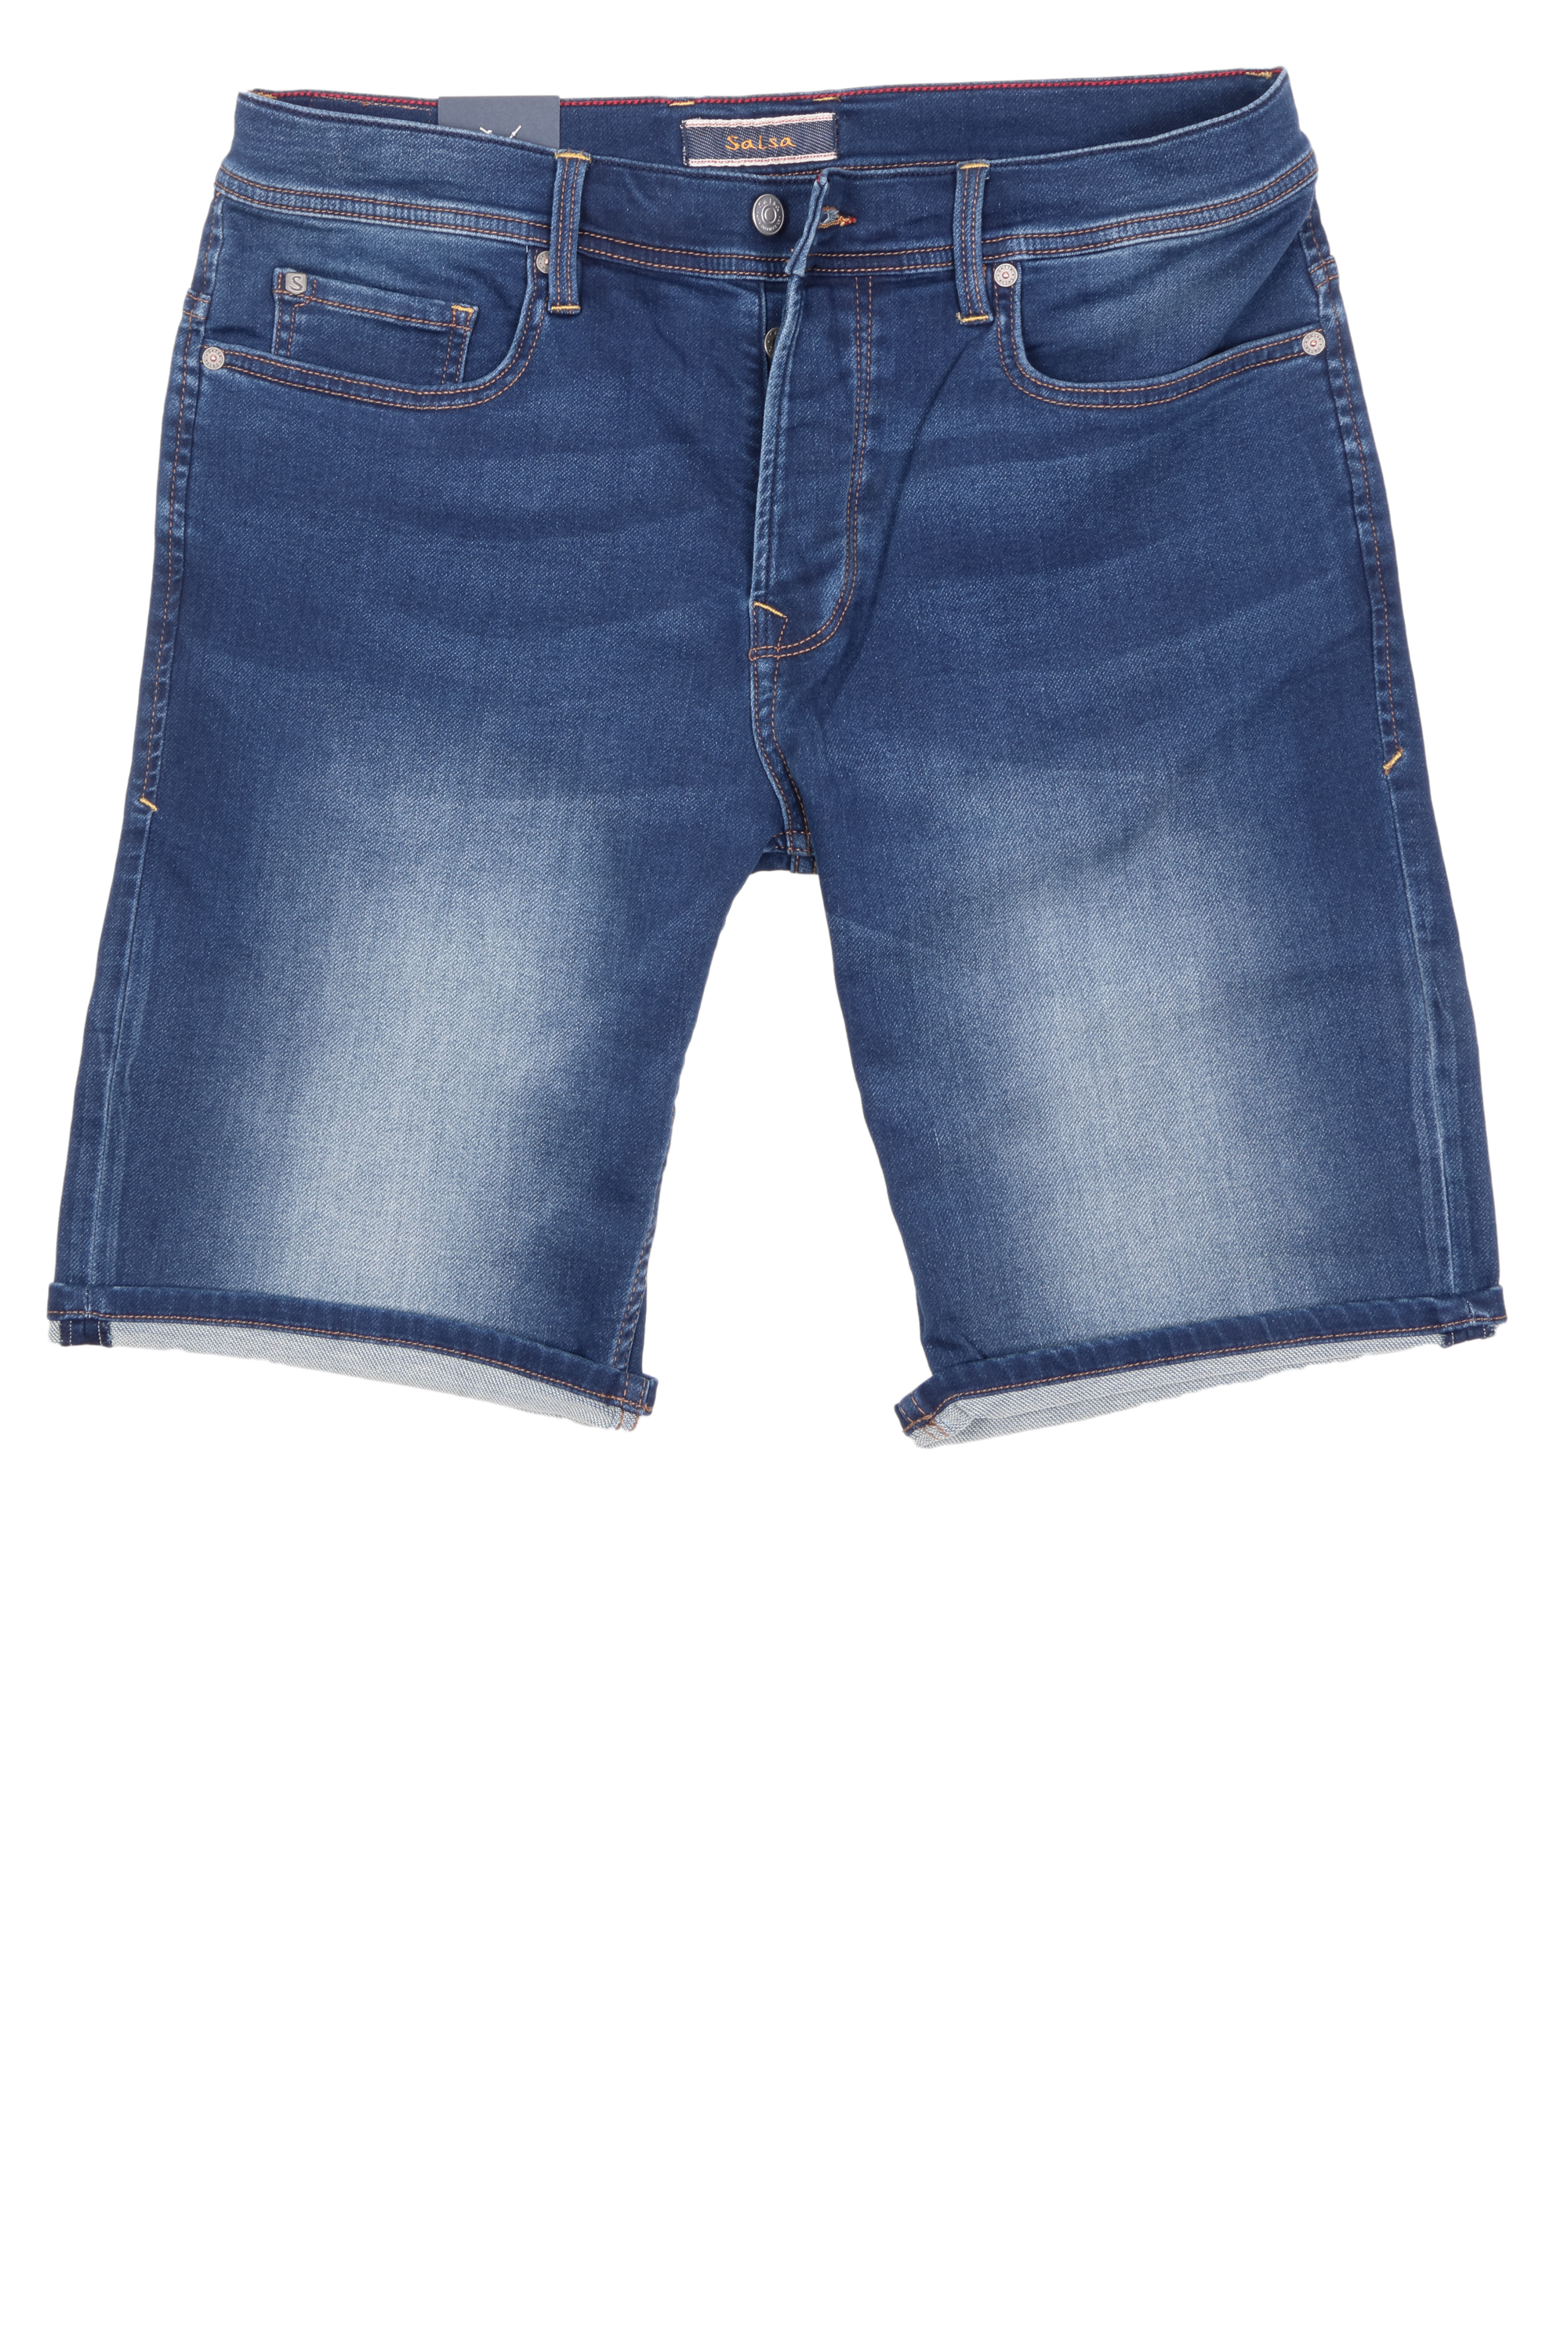 Salsa Herren Jeans Shorts Jog-Denim - blau 33